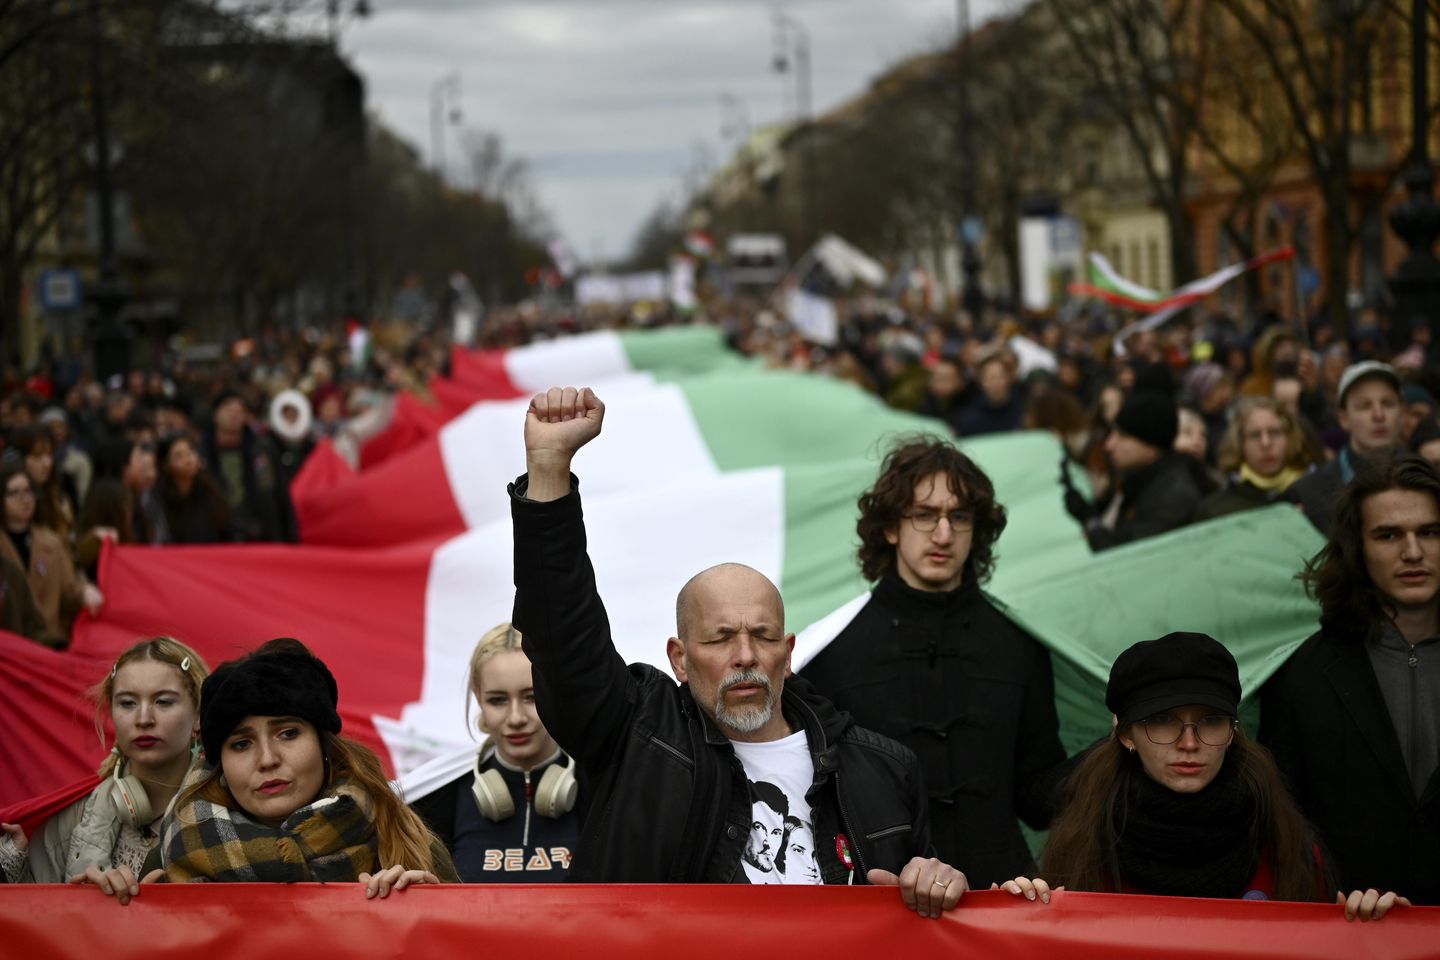 Macaristan'da öğrencilerden eğitim reformu çağrısı